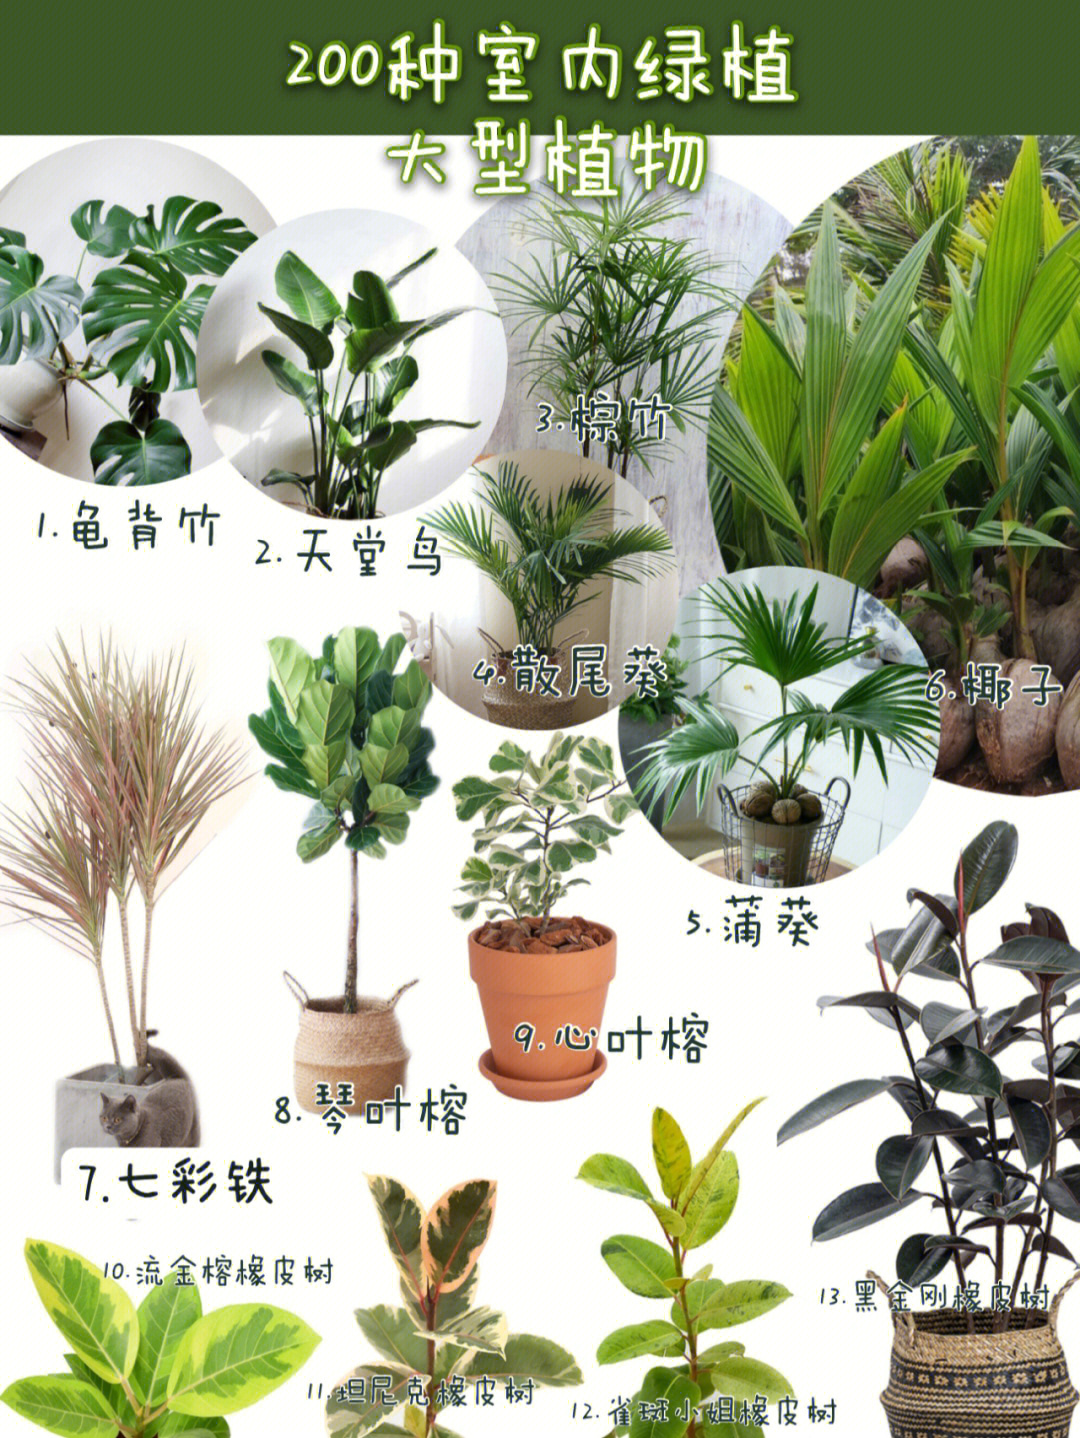 各种绿植的名称及图片图片